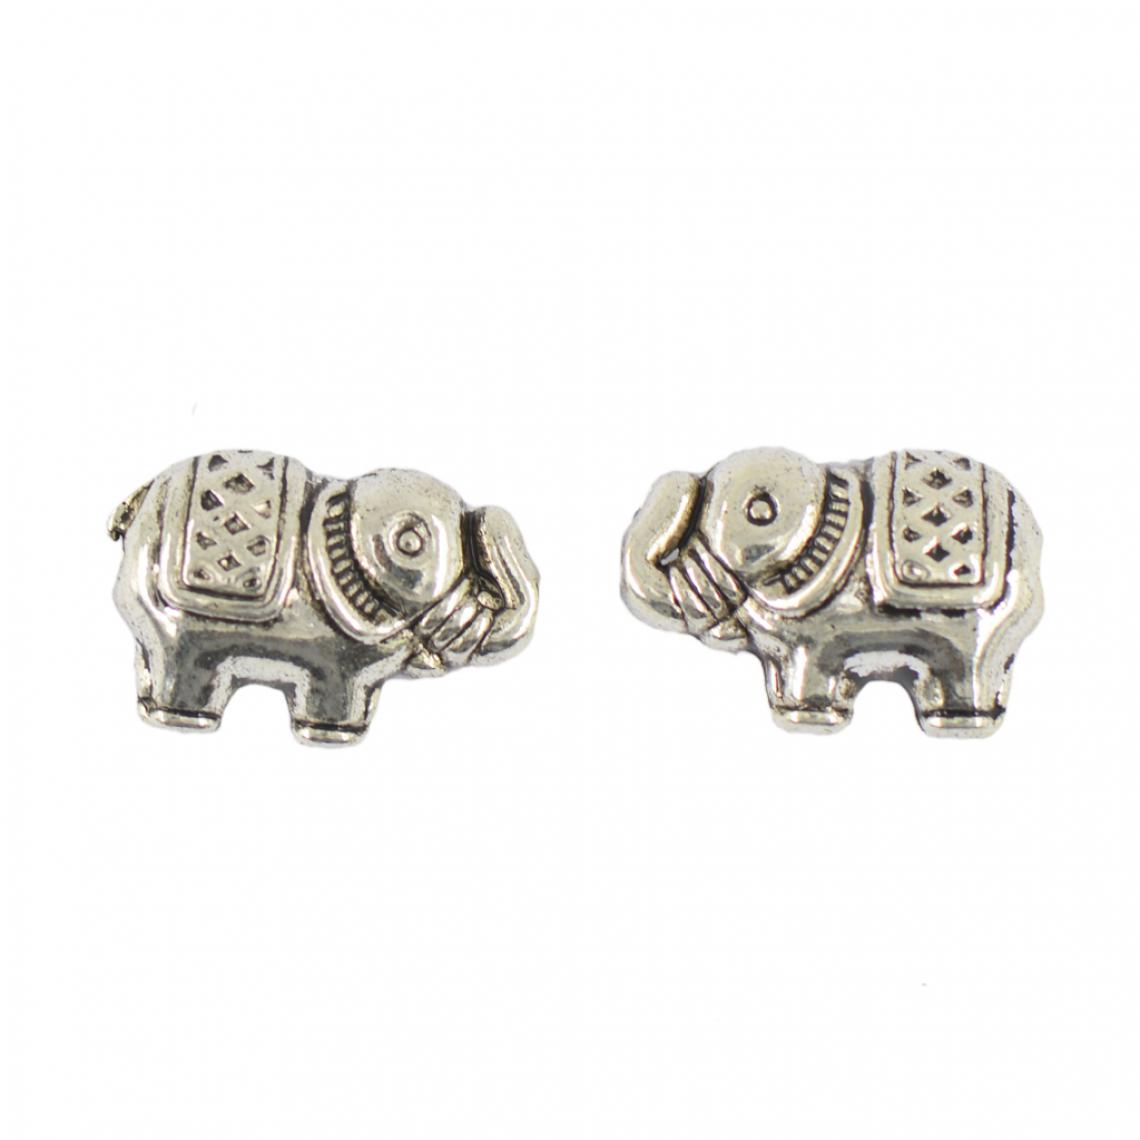 marque generique - 50 pièces elephant spacer charms perles pour bijoux en argent antique - Perles